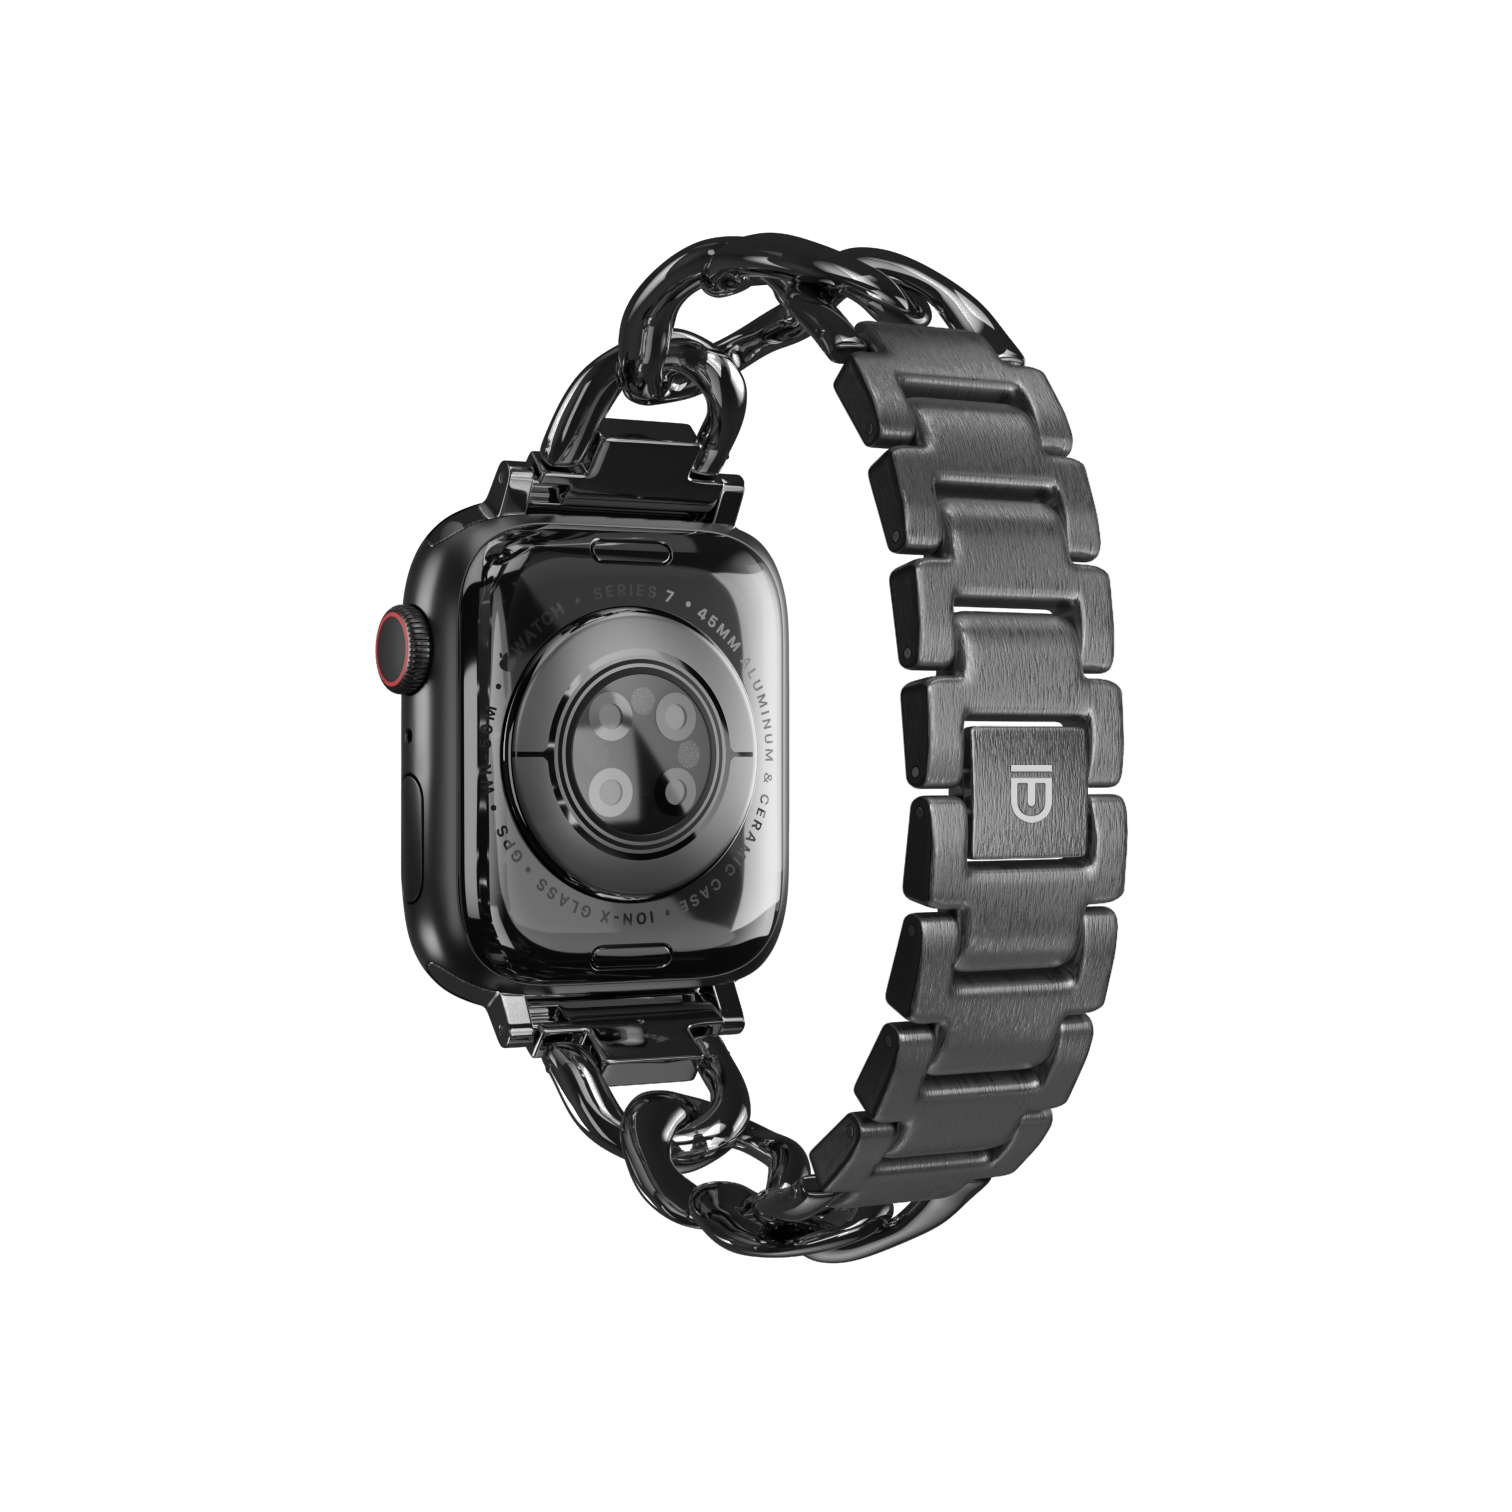 Apple Watch Bracelet Strap - Venice - Black